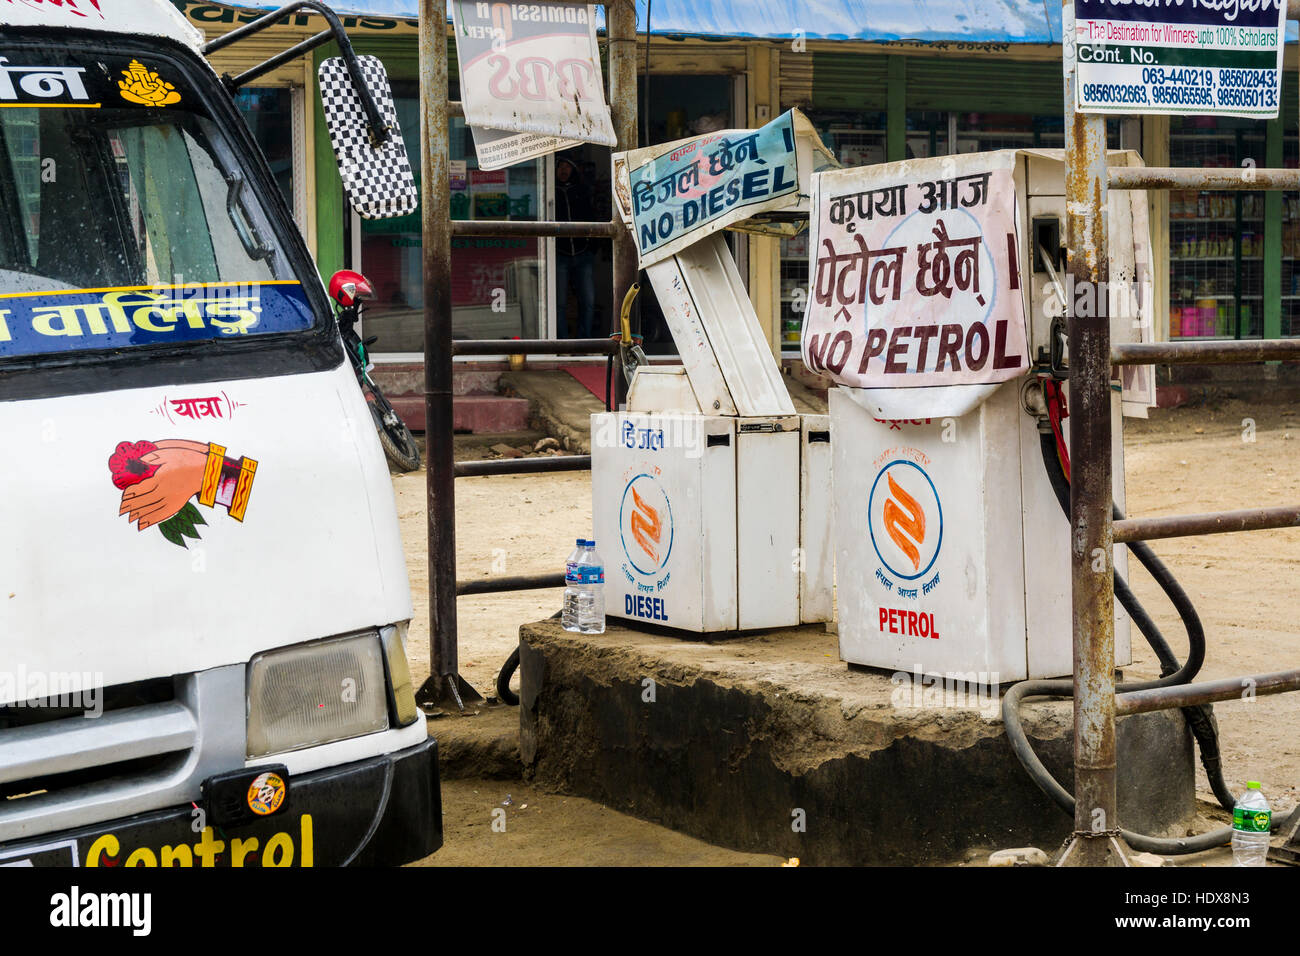 La station d'essence fermée avec le signe pour pas l'essence, pas de diesel au cours de la 2015 blocus de la frontière de l'Inde - Népal Banque D'Images